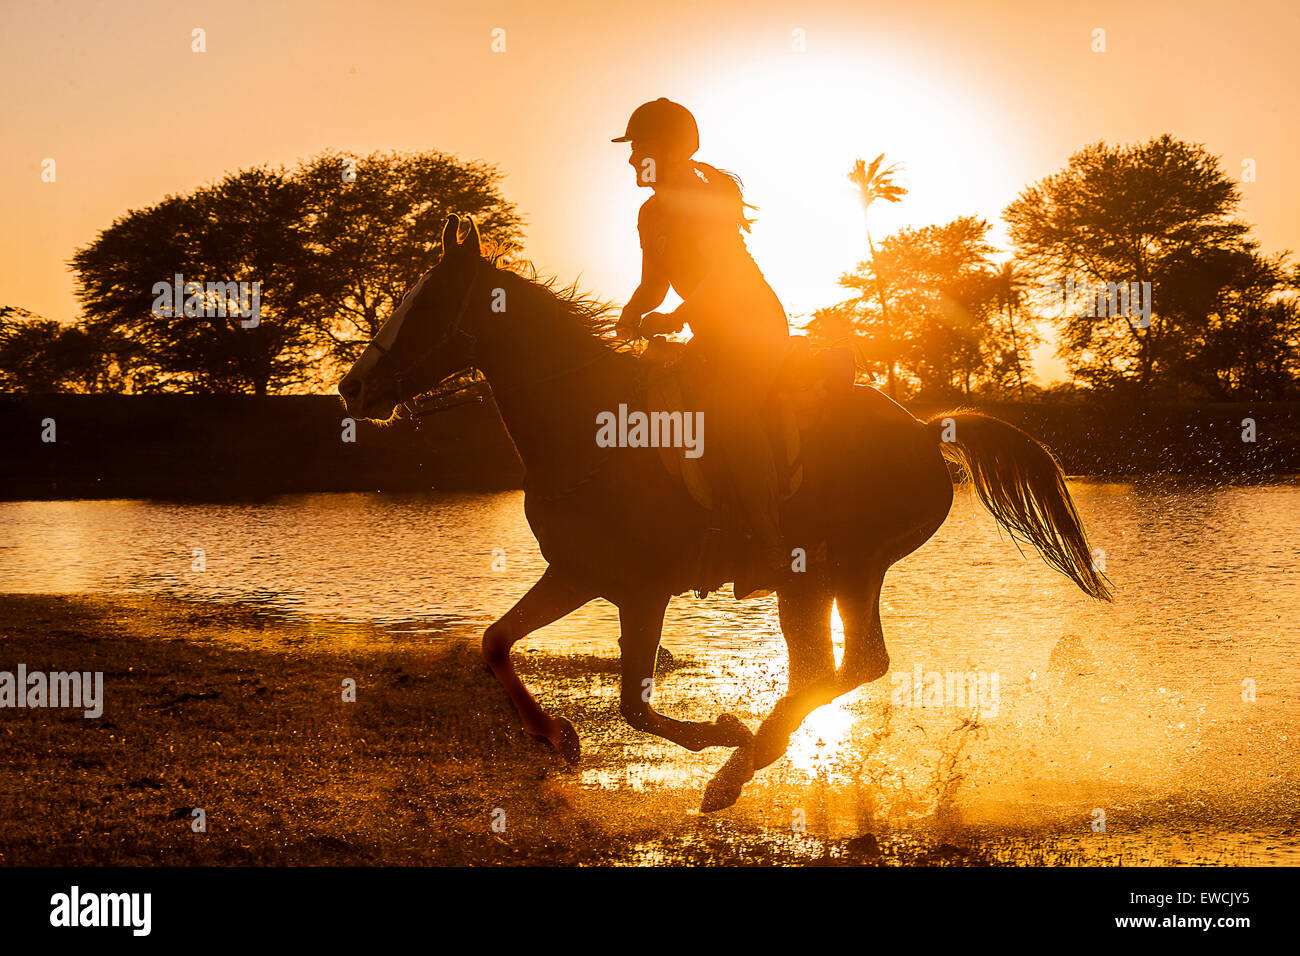 Chevaux Kathiawari. Femme rider sur une jument au galop, silhouetté contre le soleil couchant. Le Rajasthan, Inde Banque D'Images